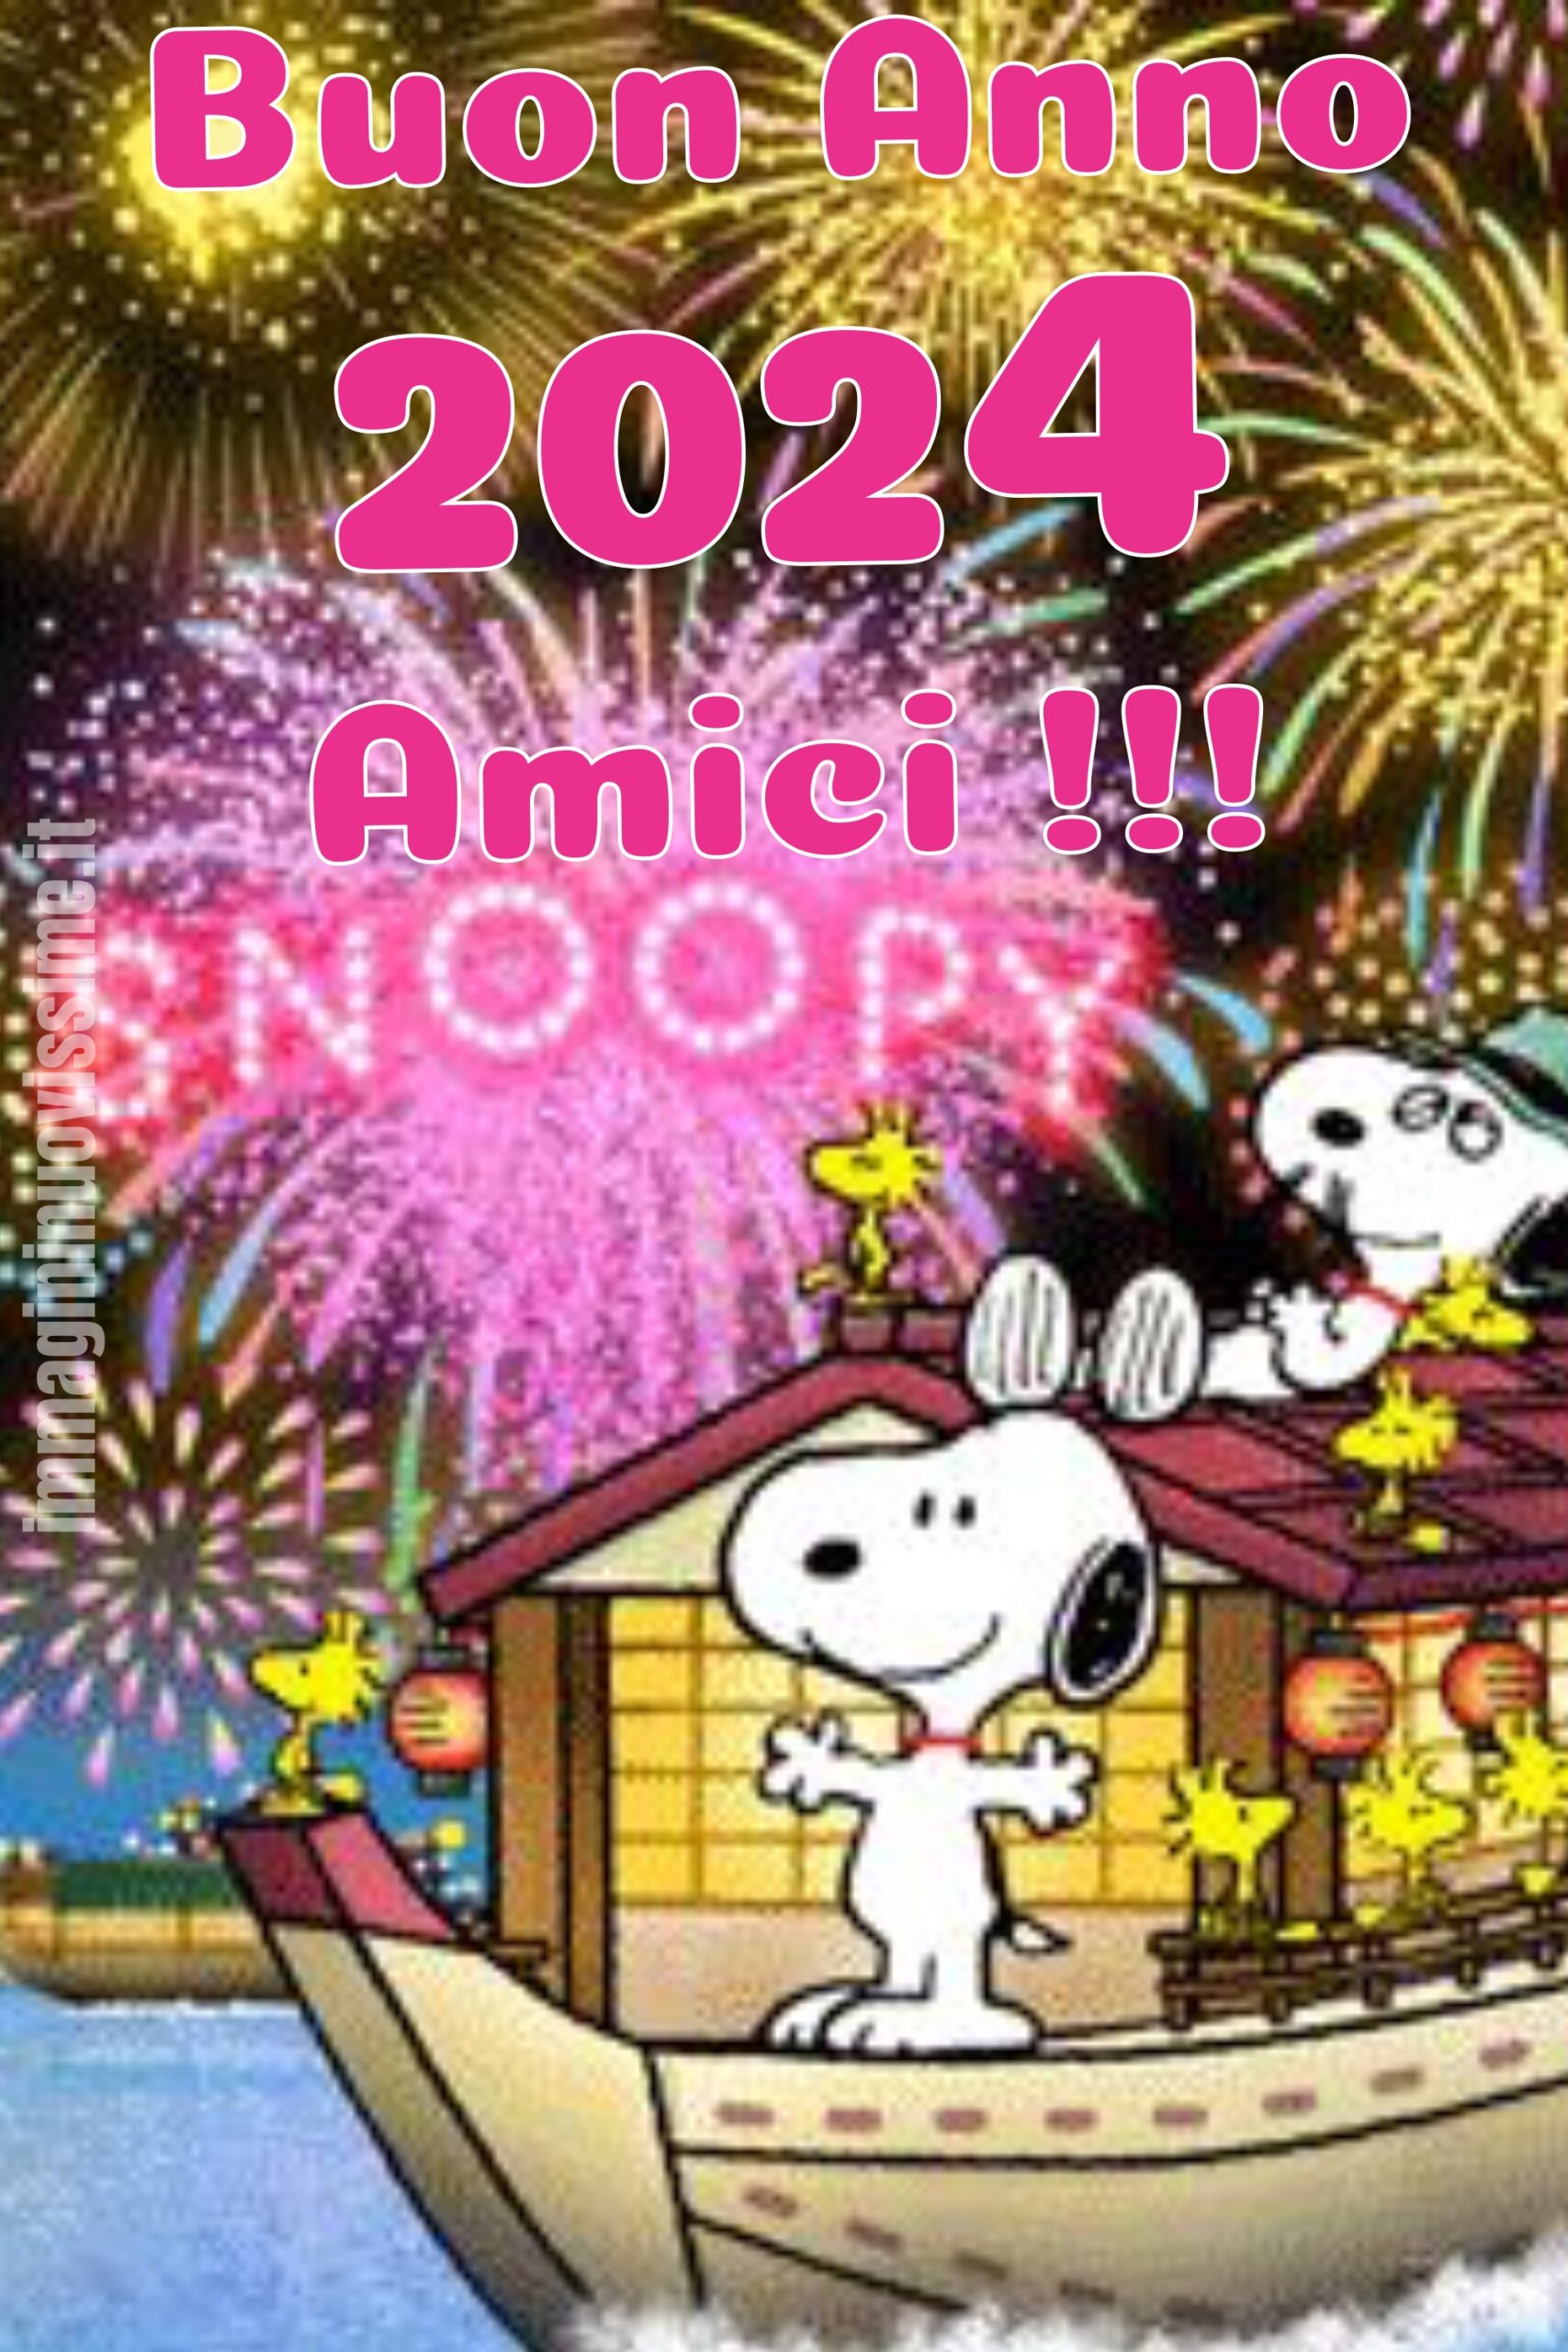 Snoopy Buon Anno 2024 amici